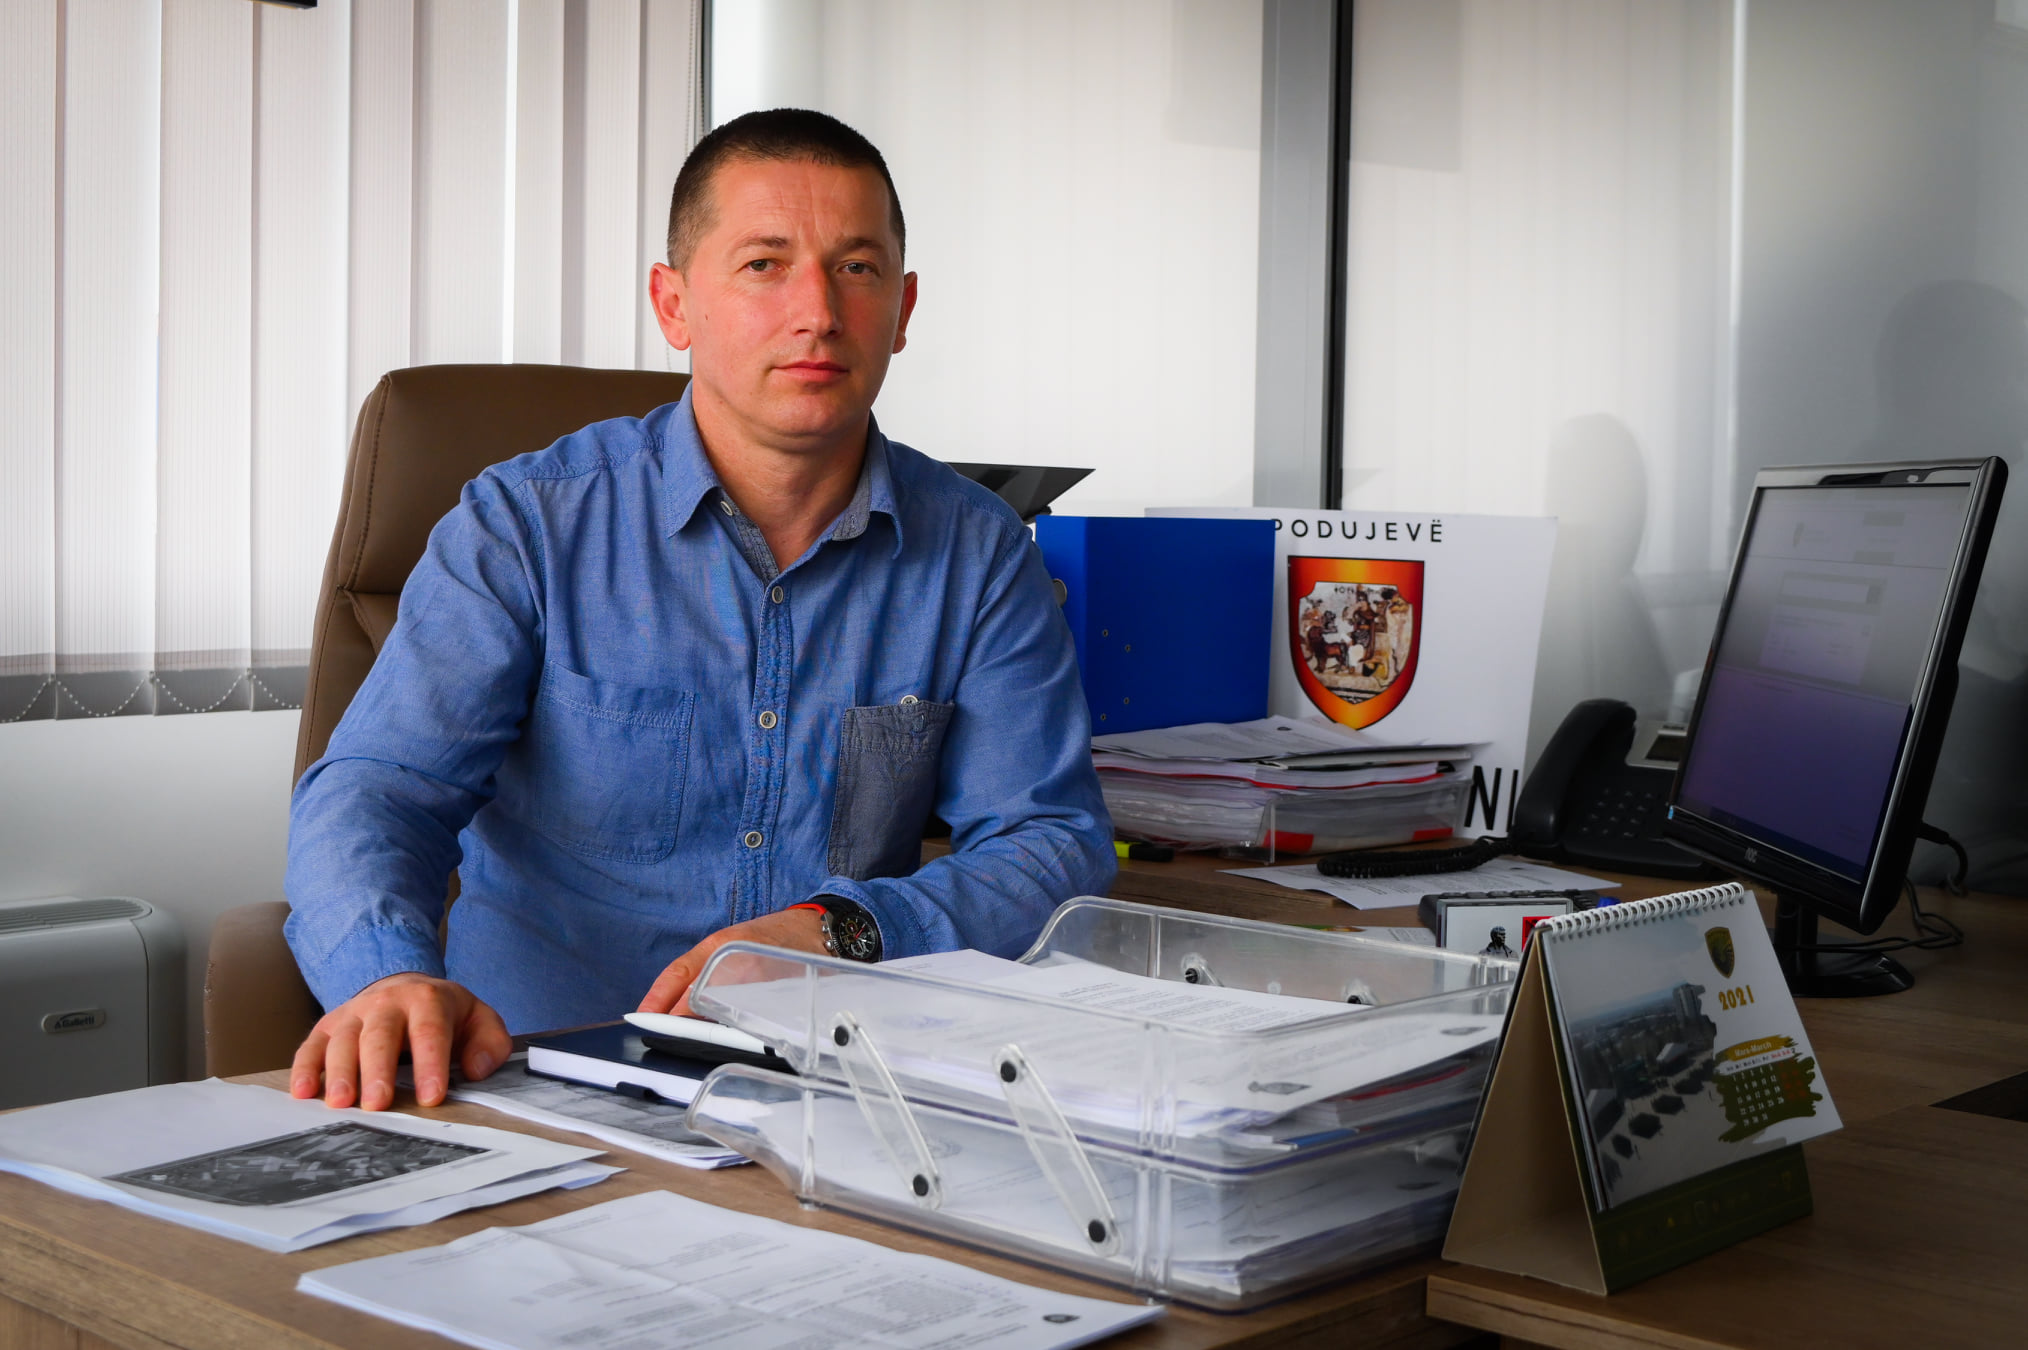  Nuk ka demokraci në VV-në e Podujevës, Bedri Maçastena eliminohet nga gara për kryetar